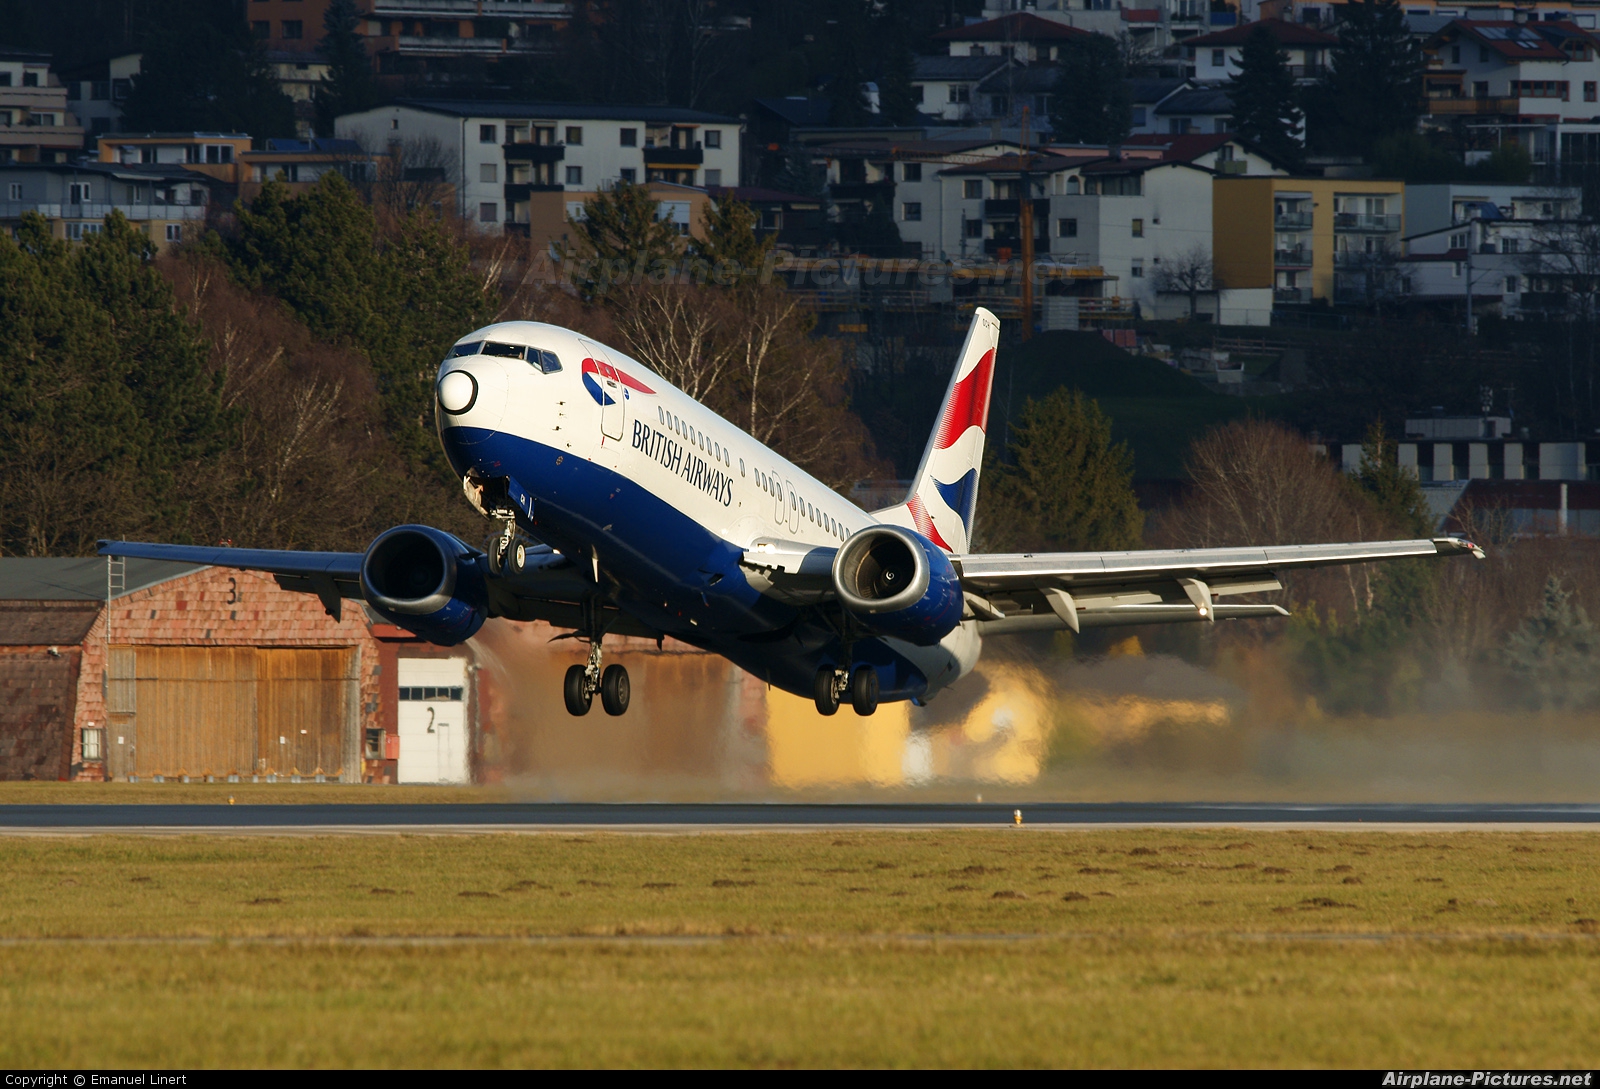 British Airways G-DOCH aircraft at Innsbruck